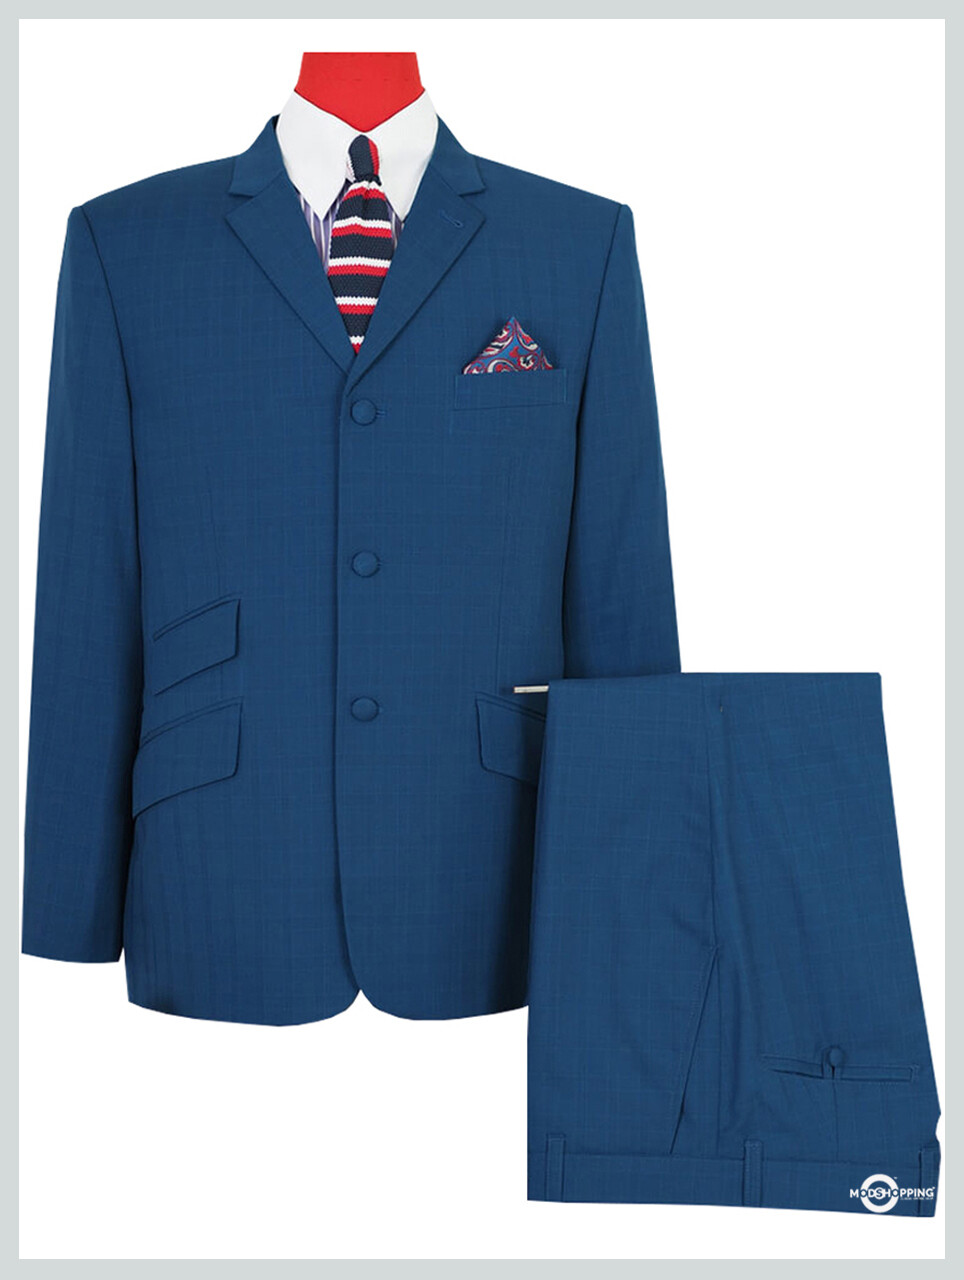 Mens Blue Suit|Teal Blue 3 Button Tailored Mohair Mod Suit